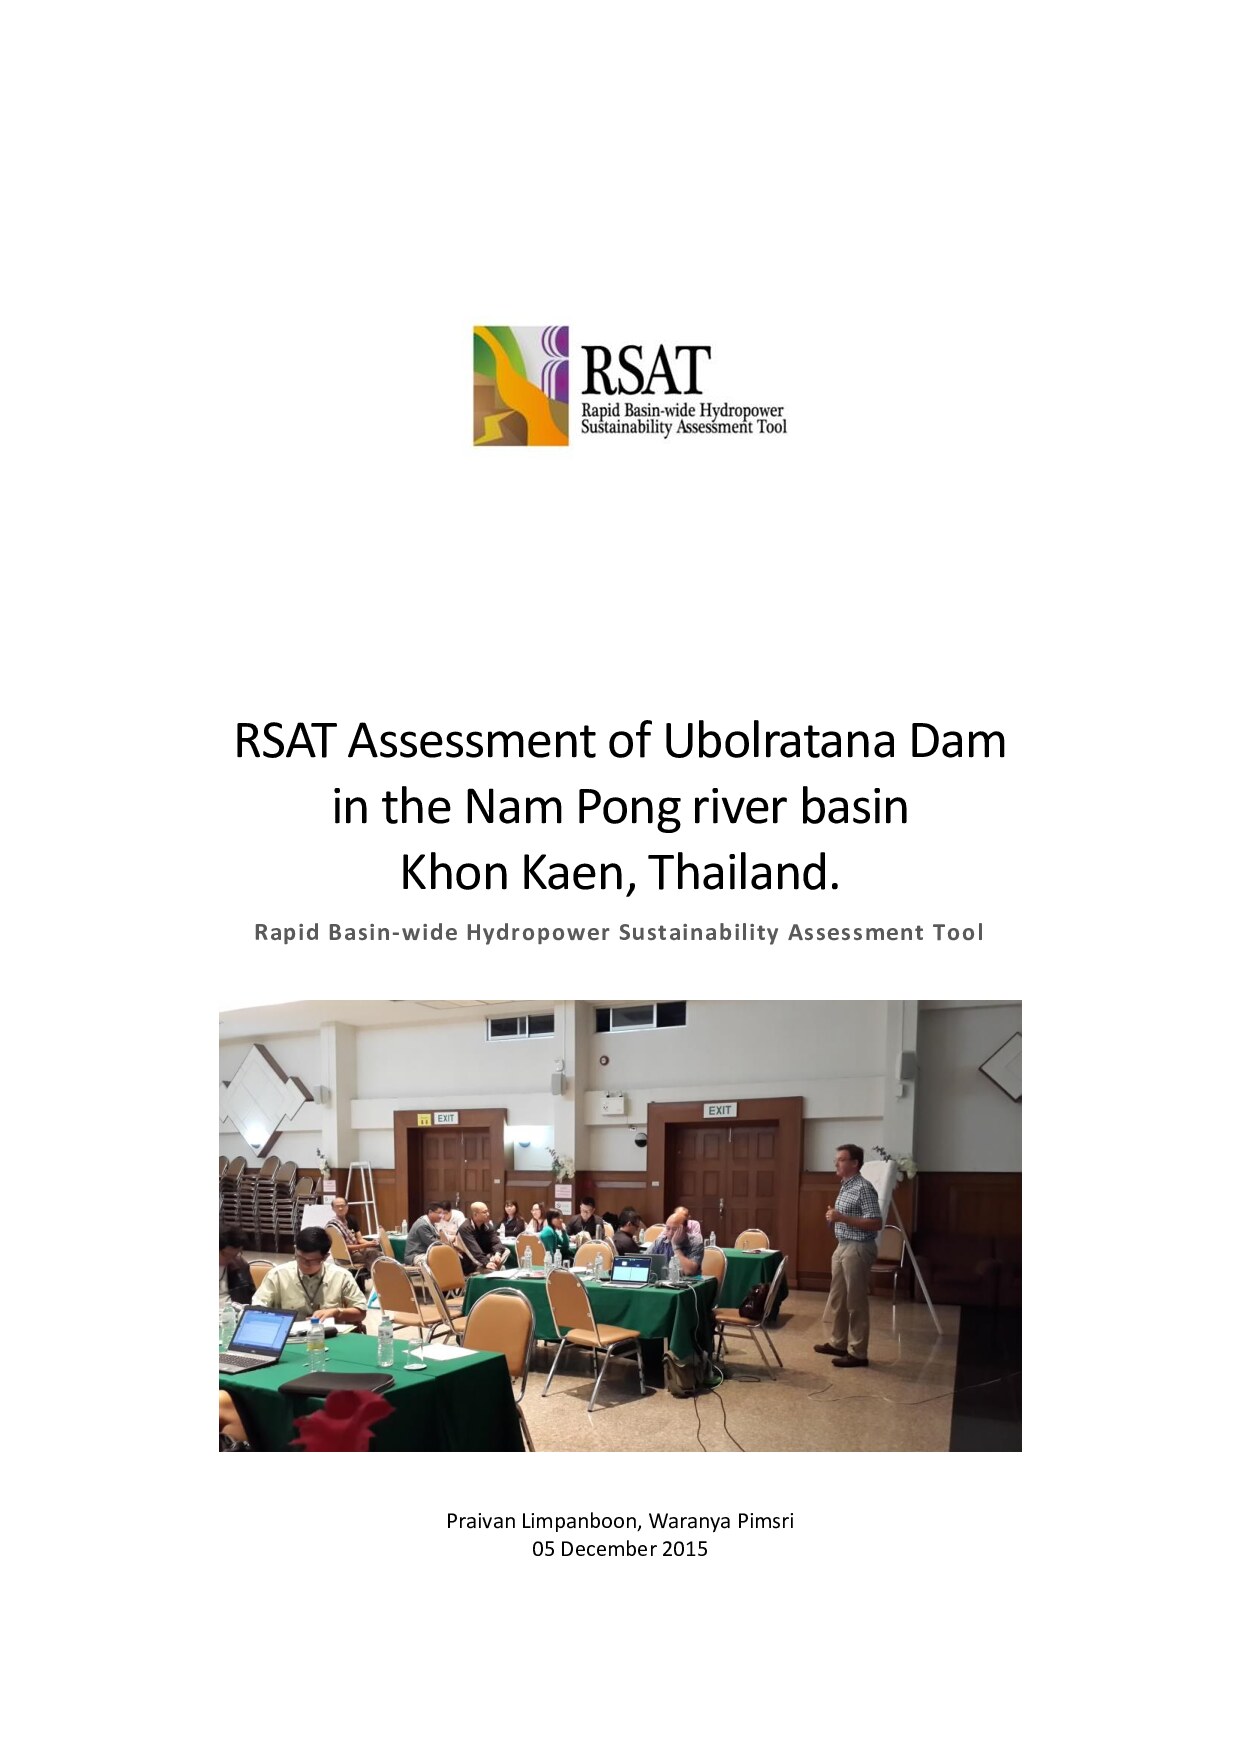 RSAT Assessment of Ubolratana Dam in the Nam Pong river basin Khon Kaen, Thailand (16/6/59)